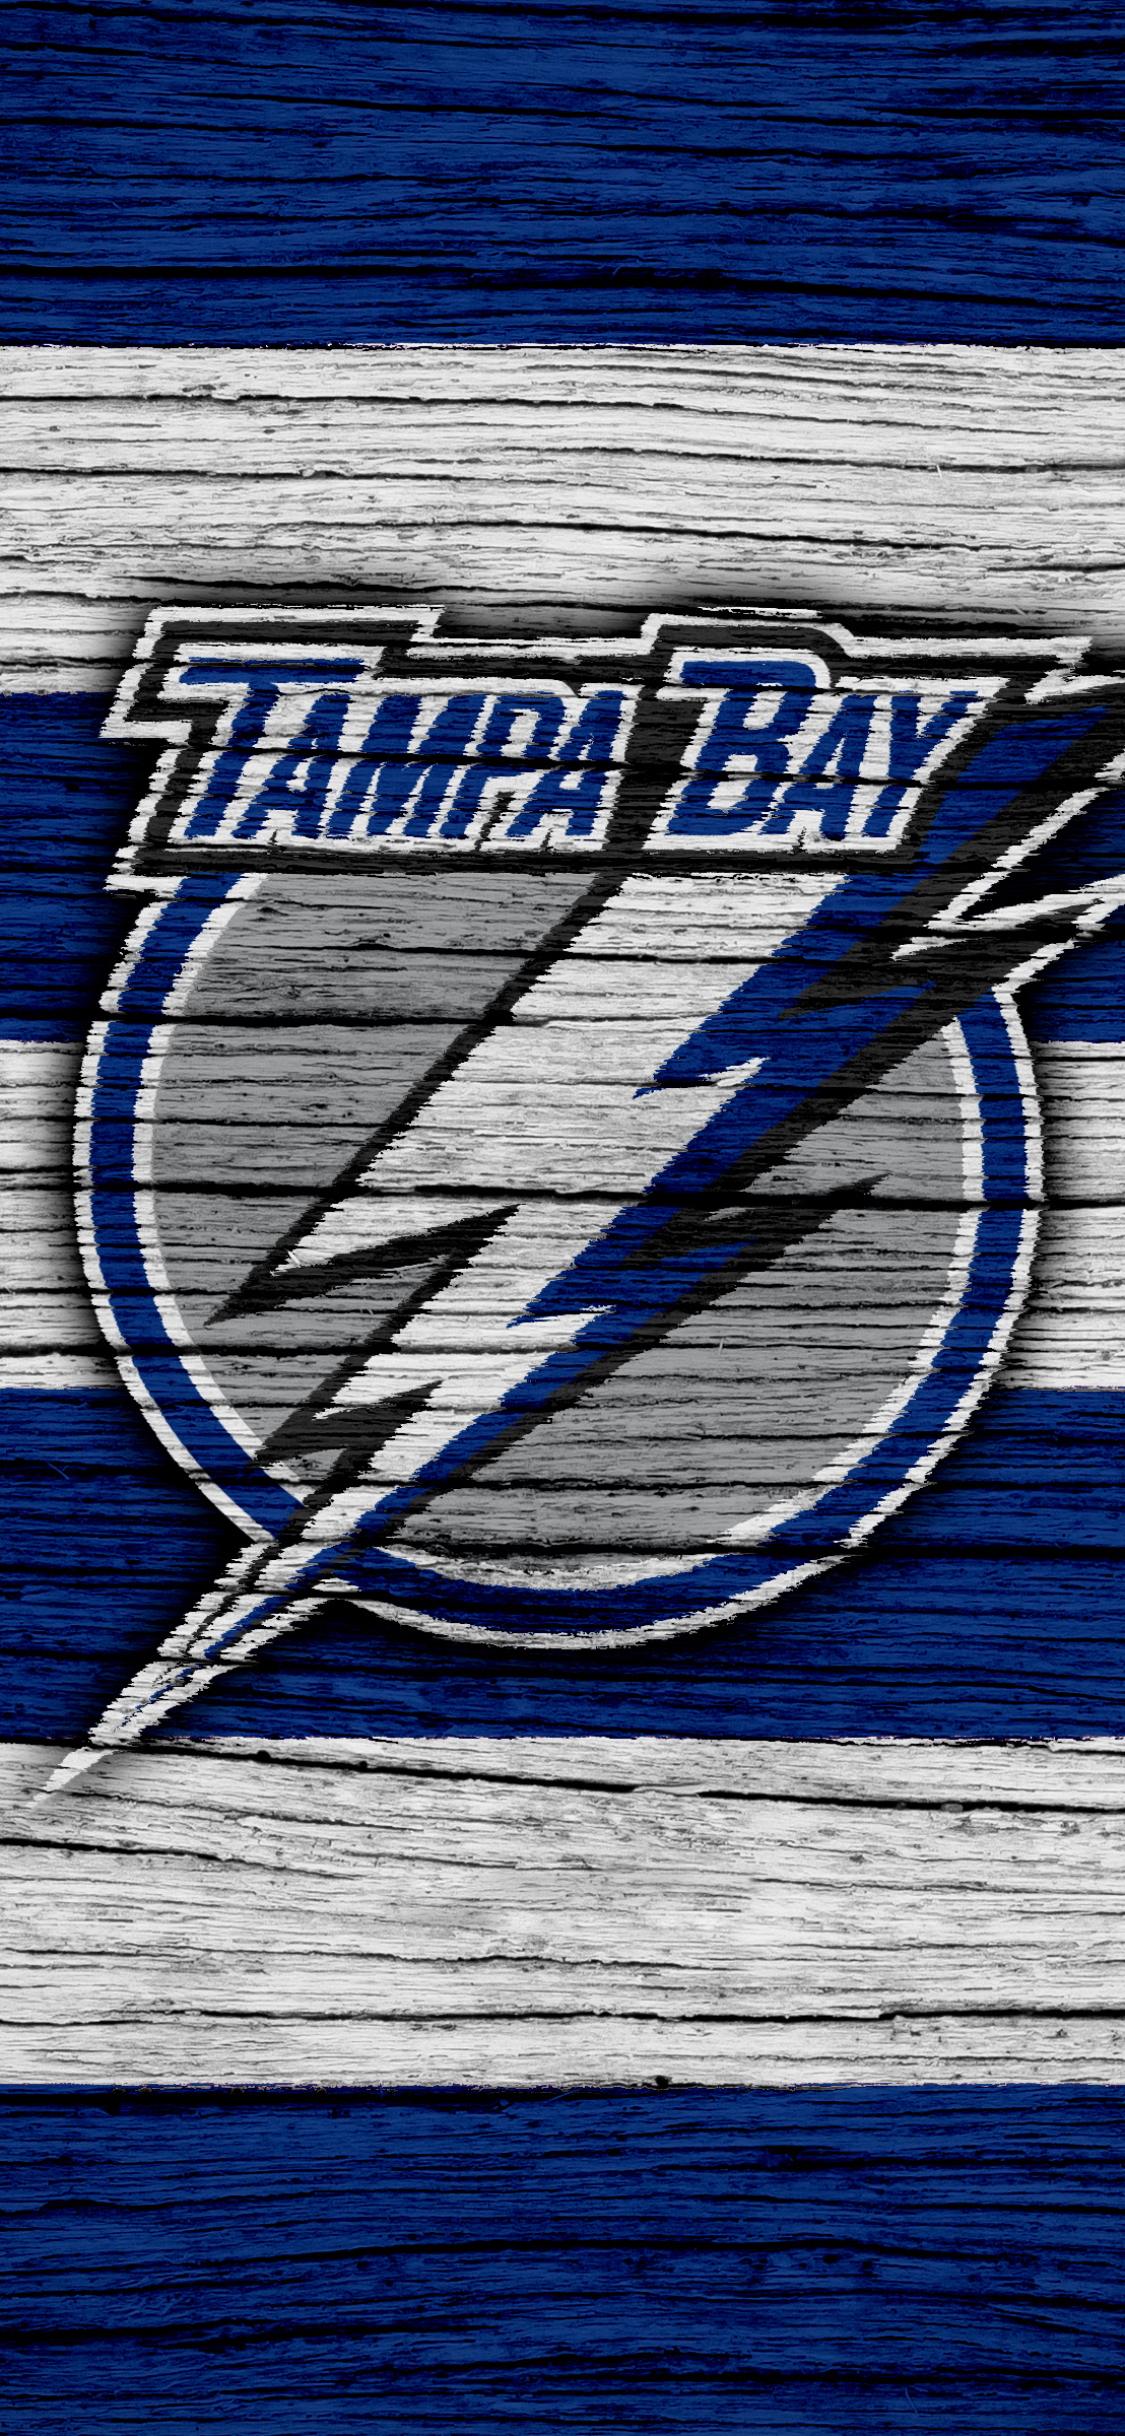 tampa bay lightning, sports, emblem, nhl, logo, hockey